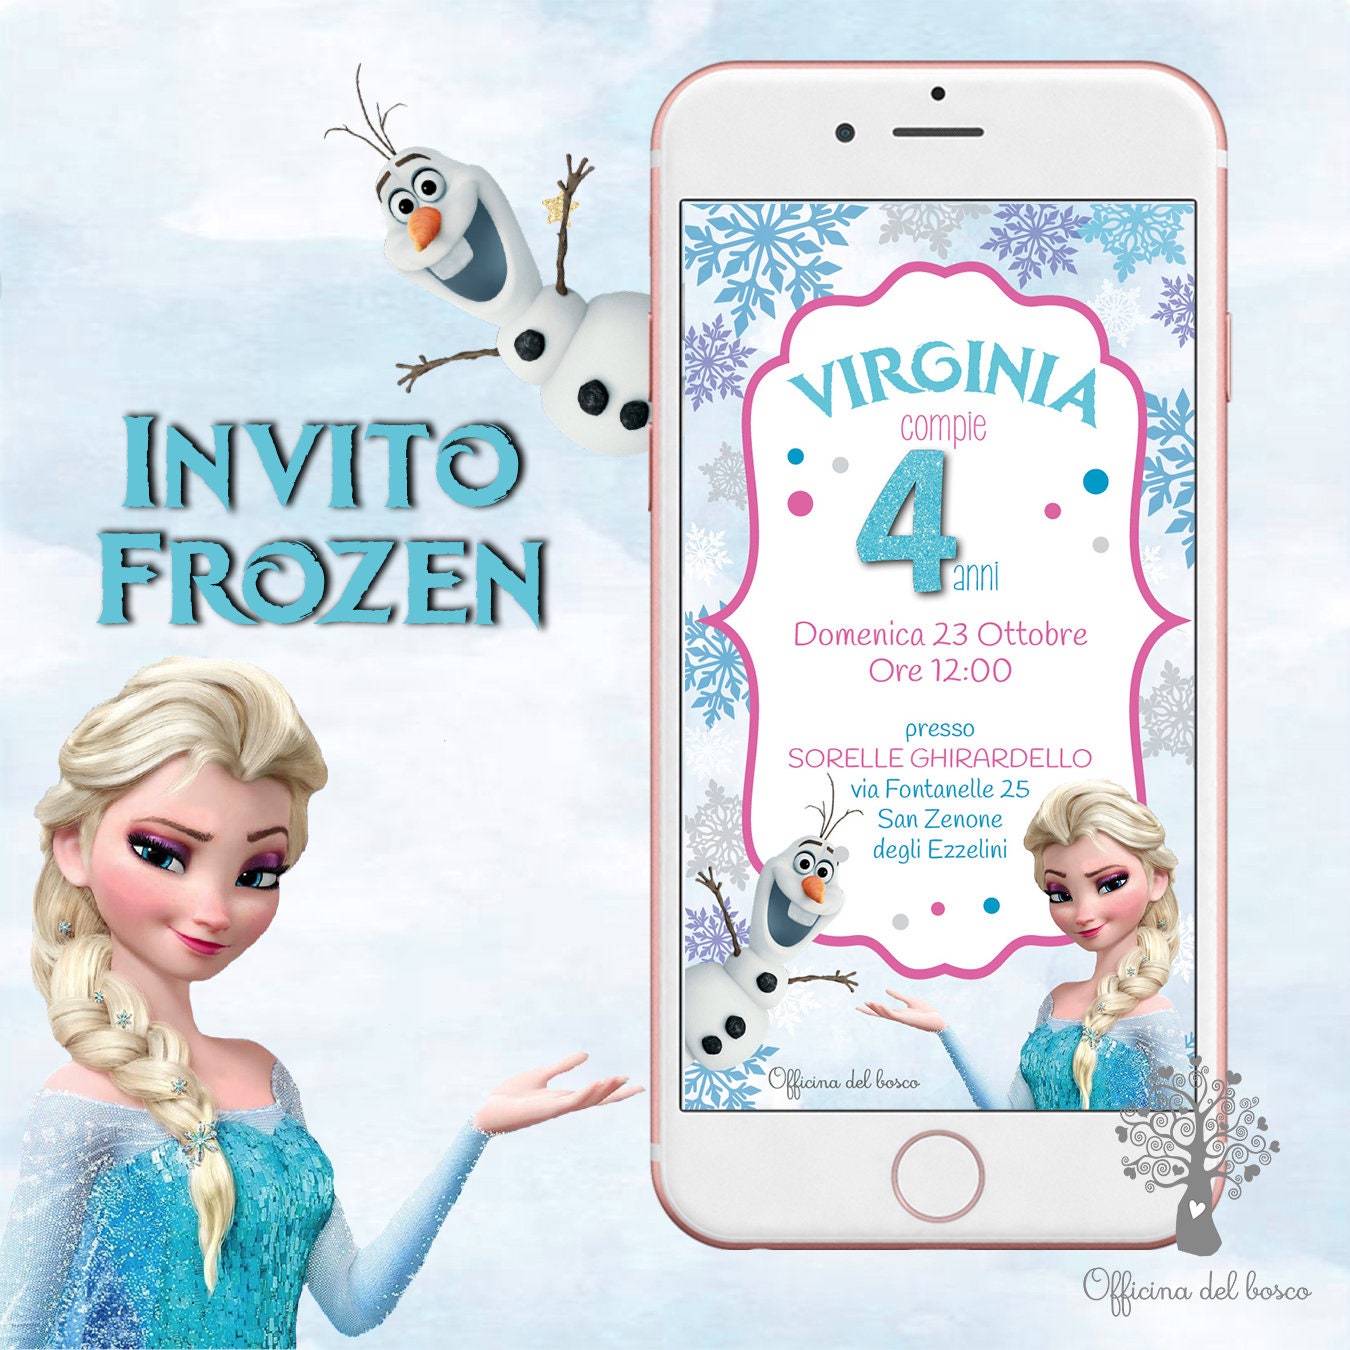 6 Ideas para una fiesta de temática Frozen! 💙❄️⛄️